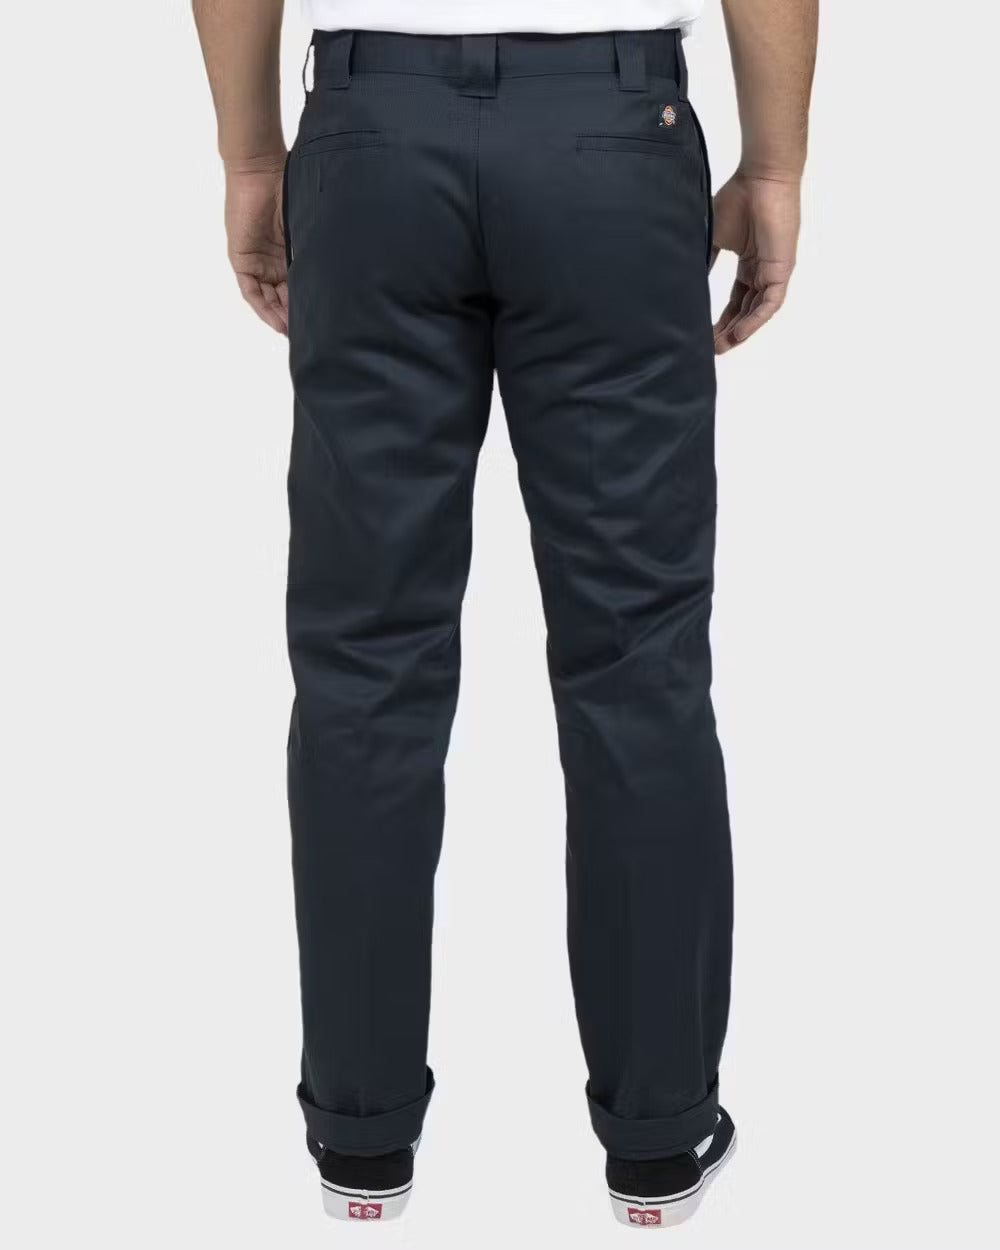 DICKIES 873 Slim Straight Fit Pants - Dark Navy - VENUE.